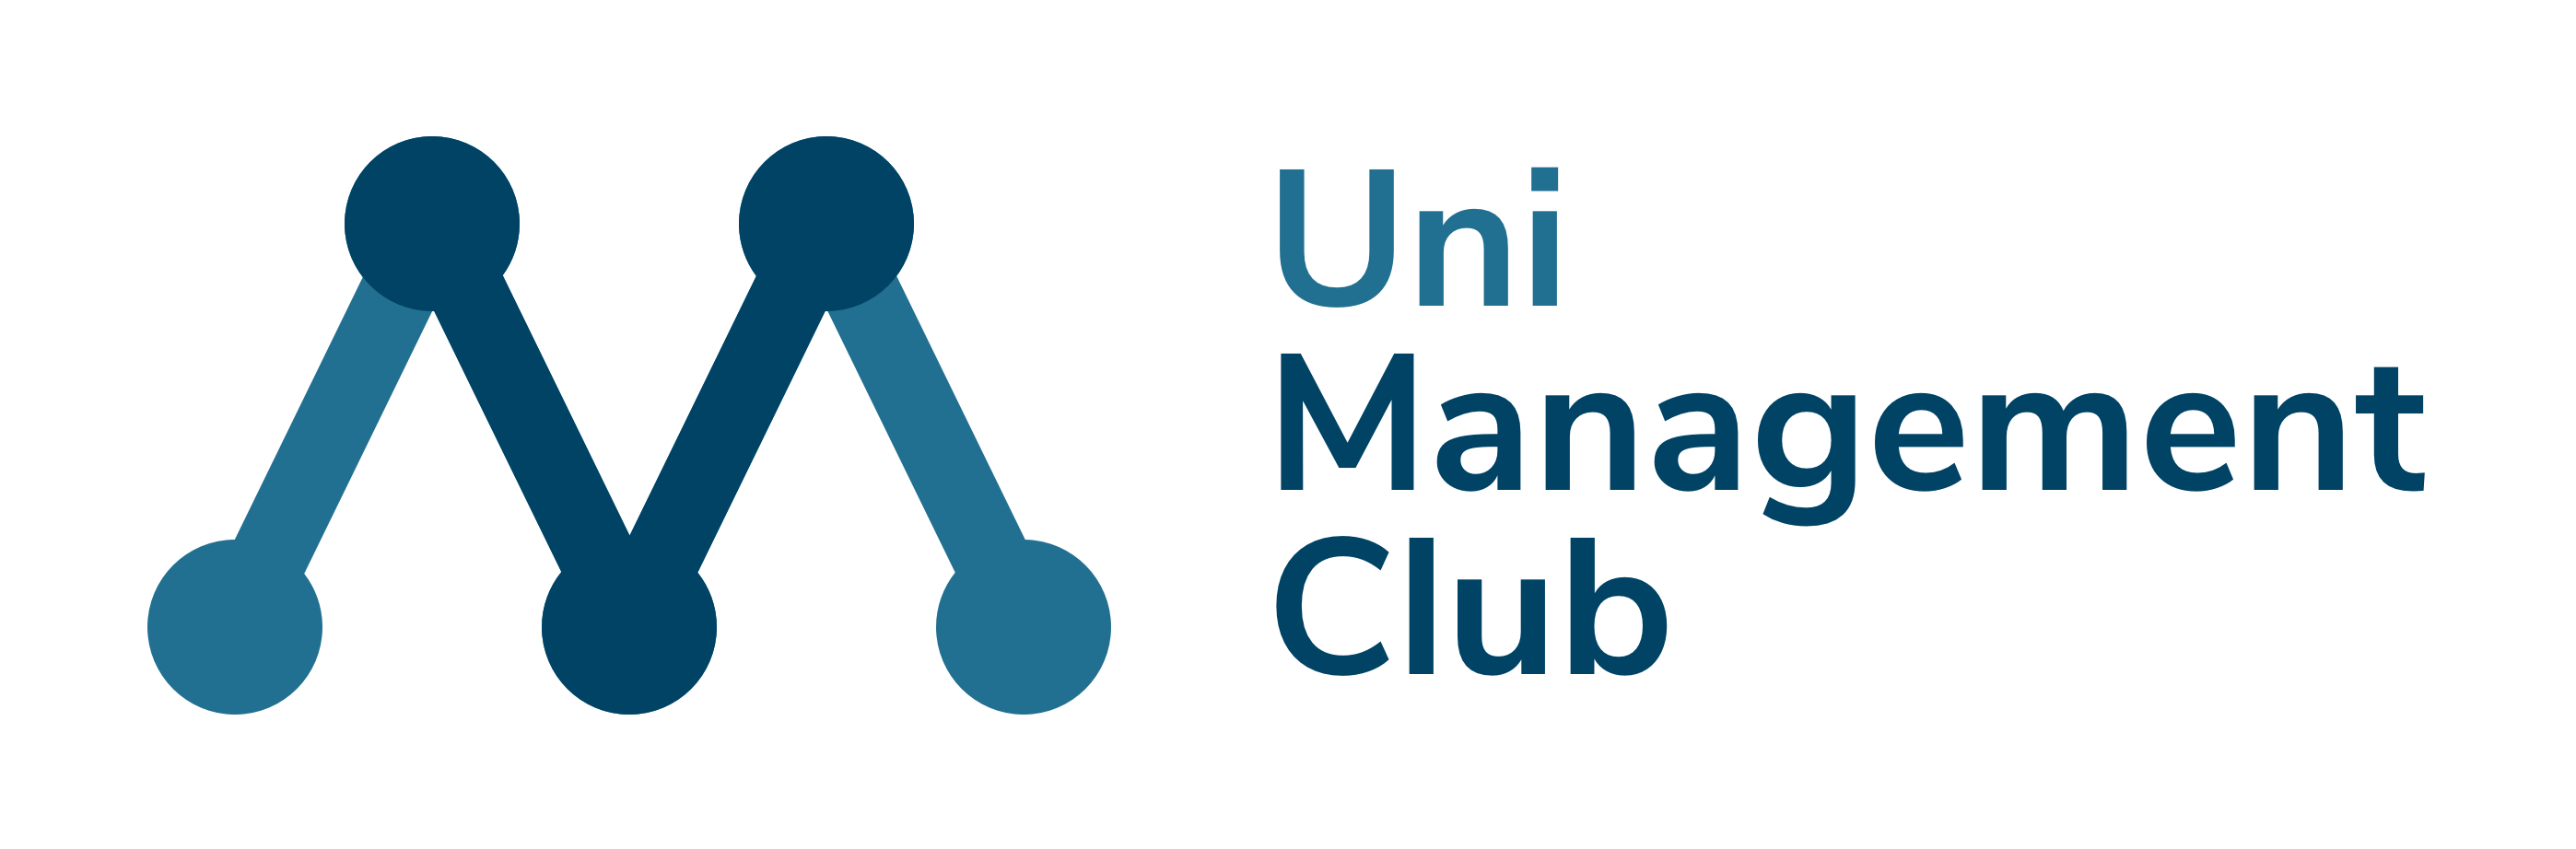 UNIMC | Uni Management Club